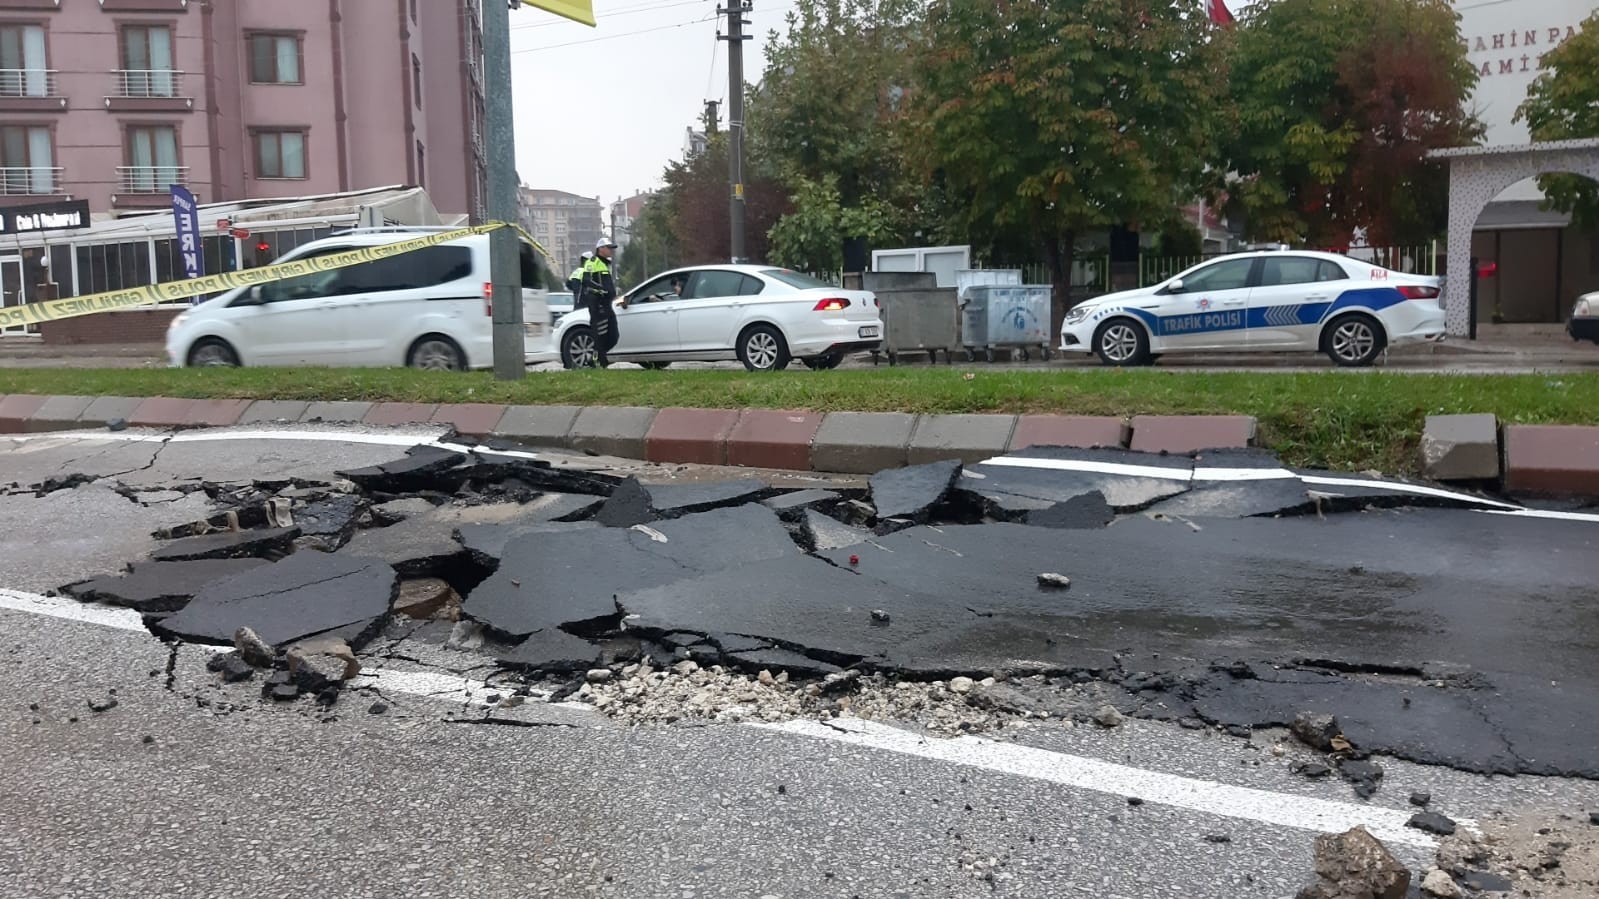 Edirne’de sel suları asfaltı söktü, iş yerlerini su bastı, otomobiller yolda kaldı #edirne